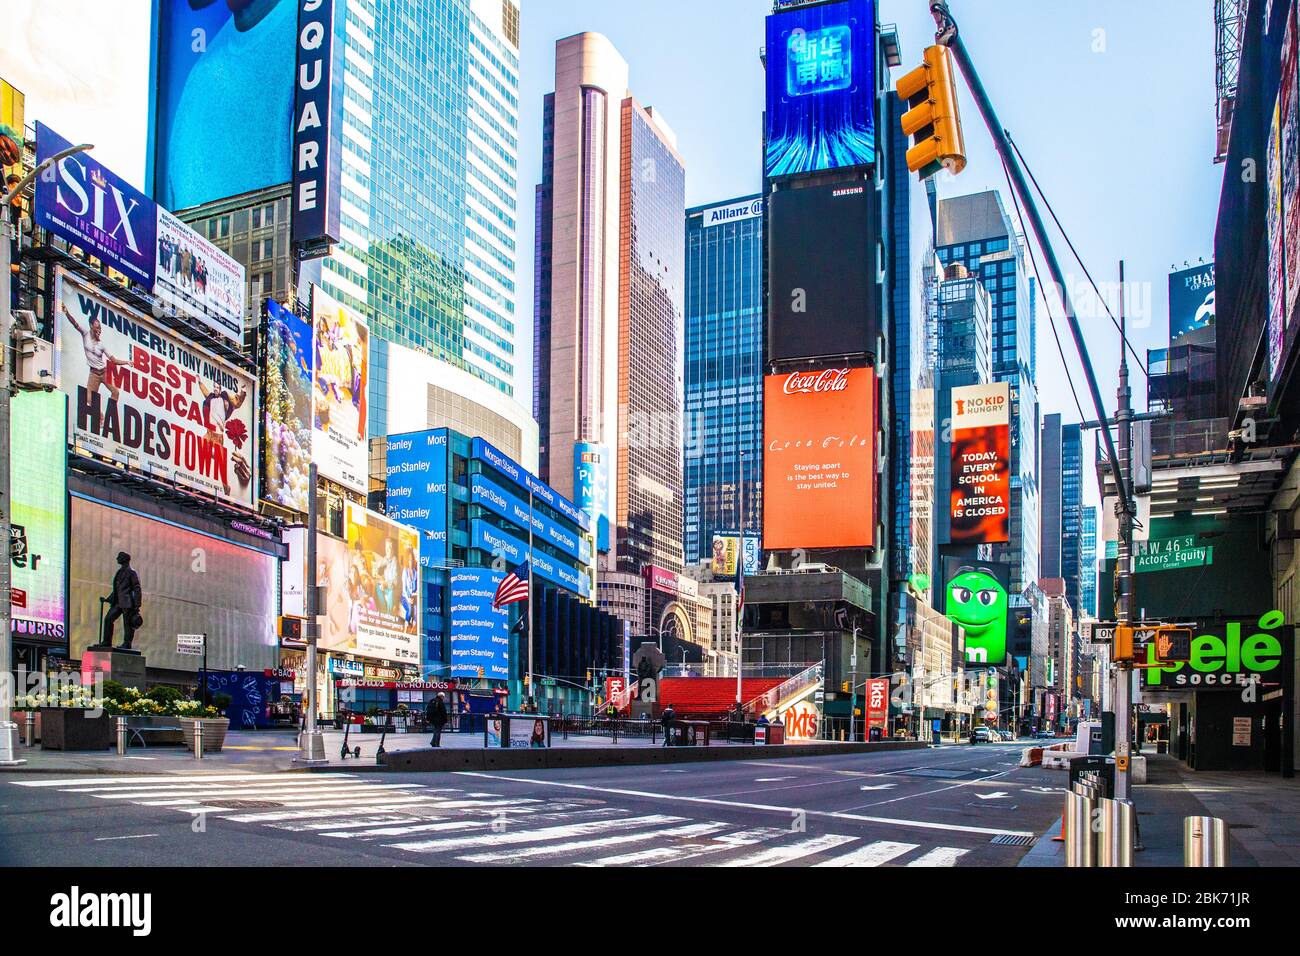 CIUDAD DE NUEVA YORK - 19 DE ABRIL de 2020: Vista de la calle vacía en Times Square, Nueva York en Manhattan durante el cierre de la pandemia del Corcoravirus Covid-19. Foto de stock